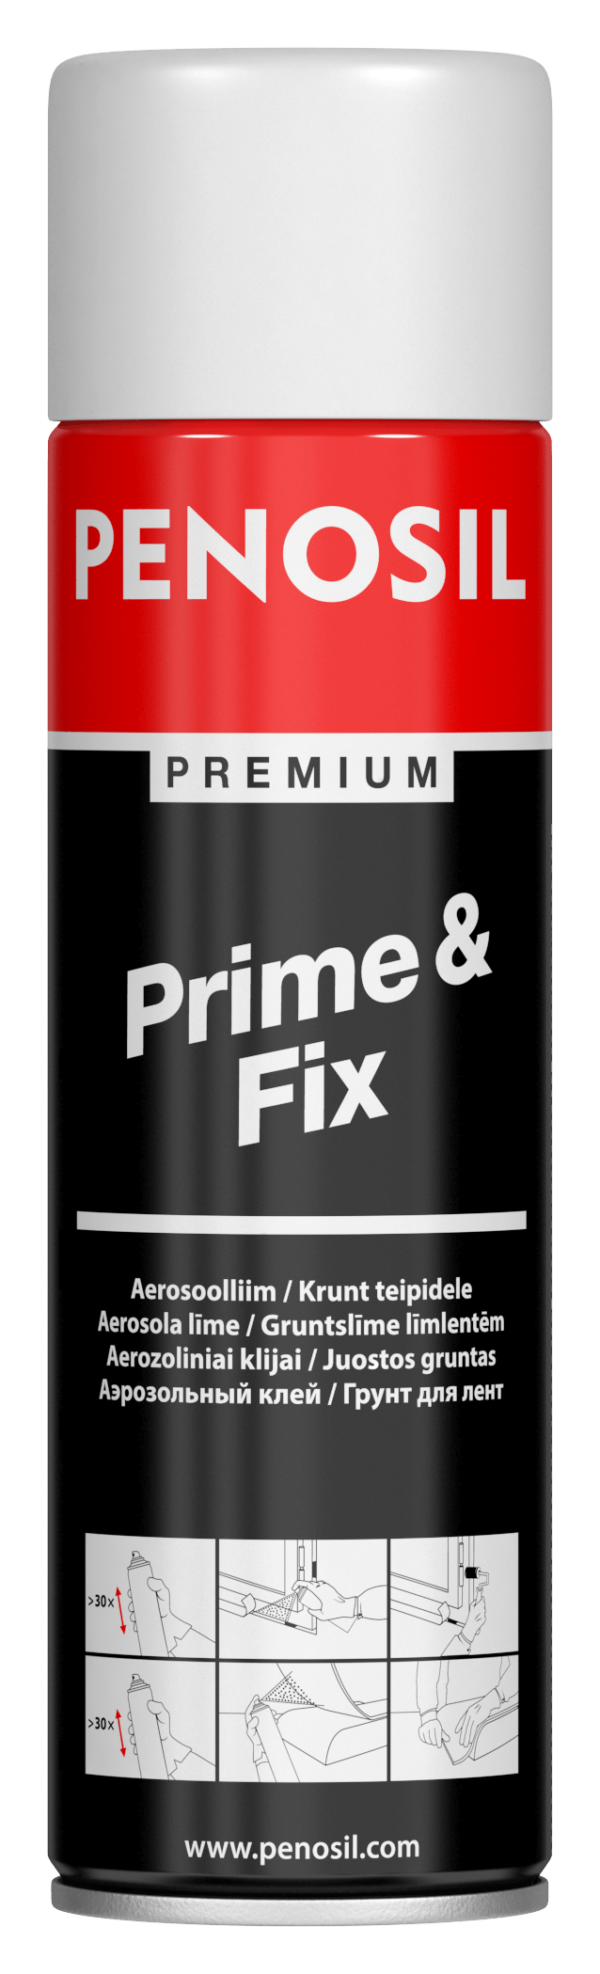 PENOSIL Prime&Fix kontaktní lepidlo ve spreji